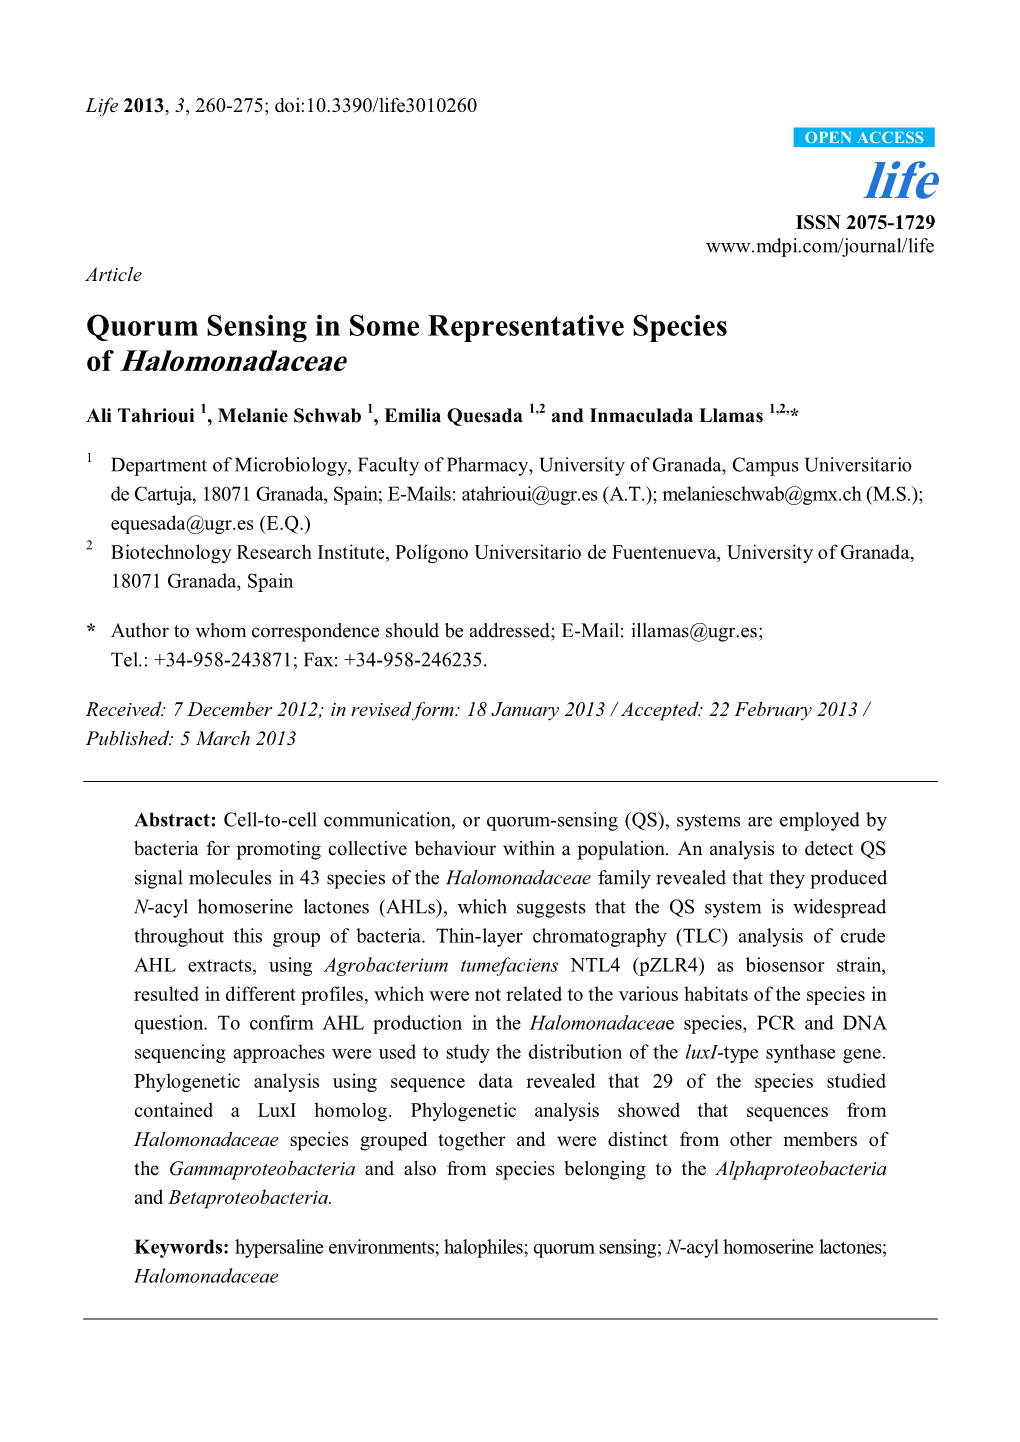 Quorum Sensing in Some Representative Species of Halomonadaceae